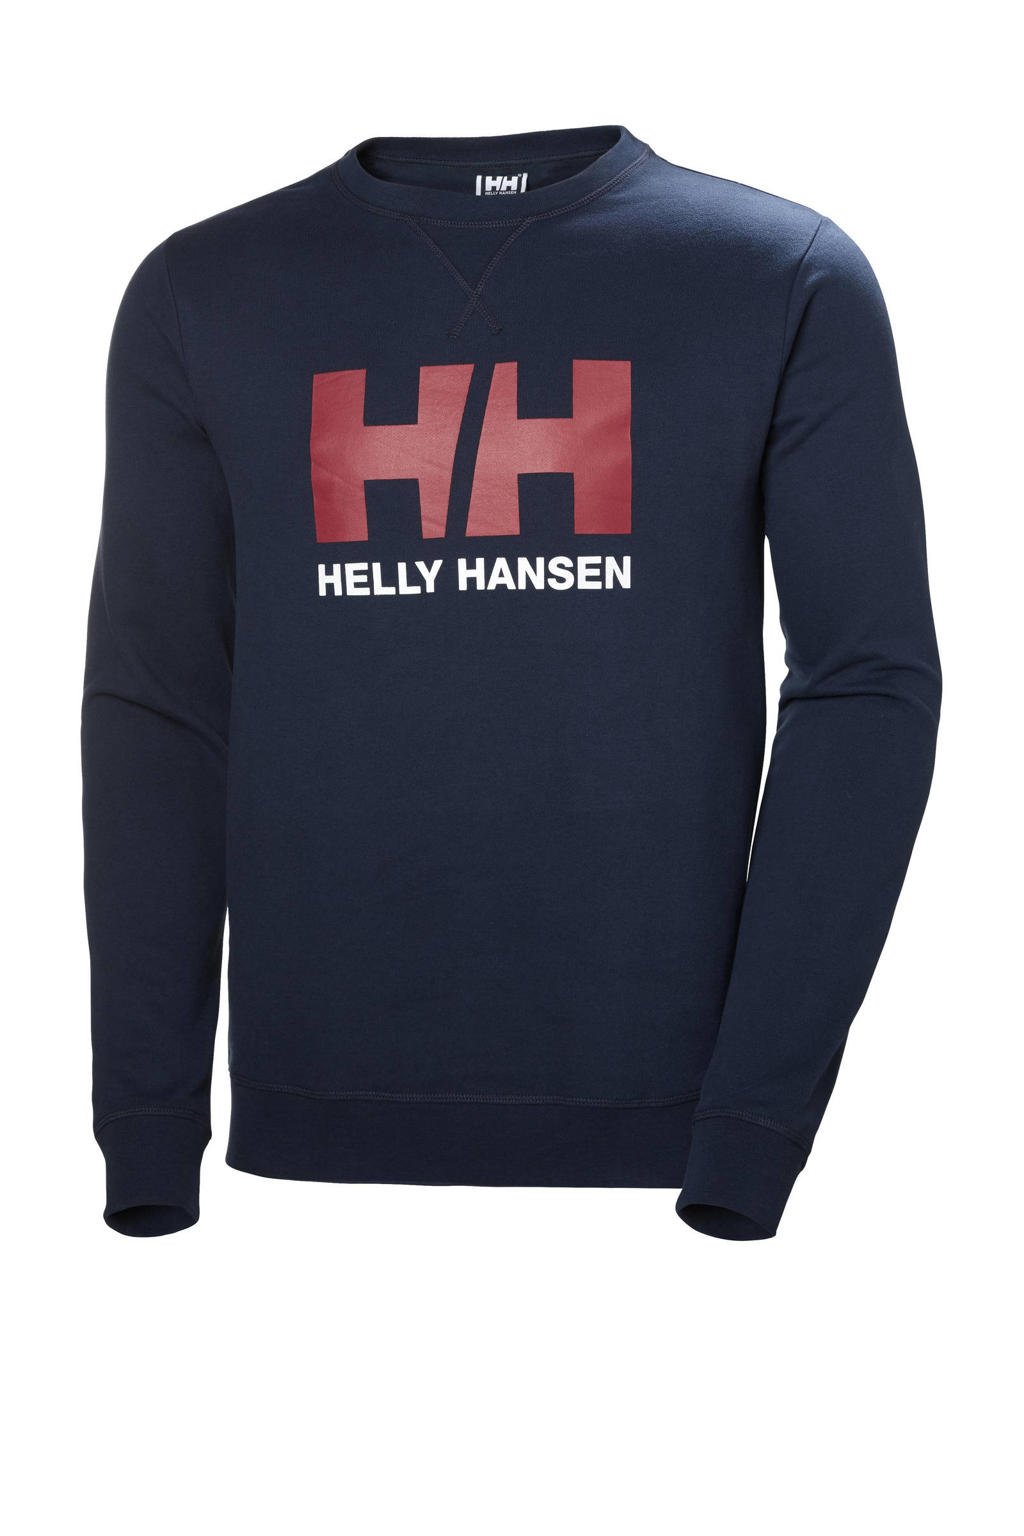 Donkerblauwe heren Helly Hansen sweater van polyester met logo dessin, lange mouwen en ronde hals